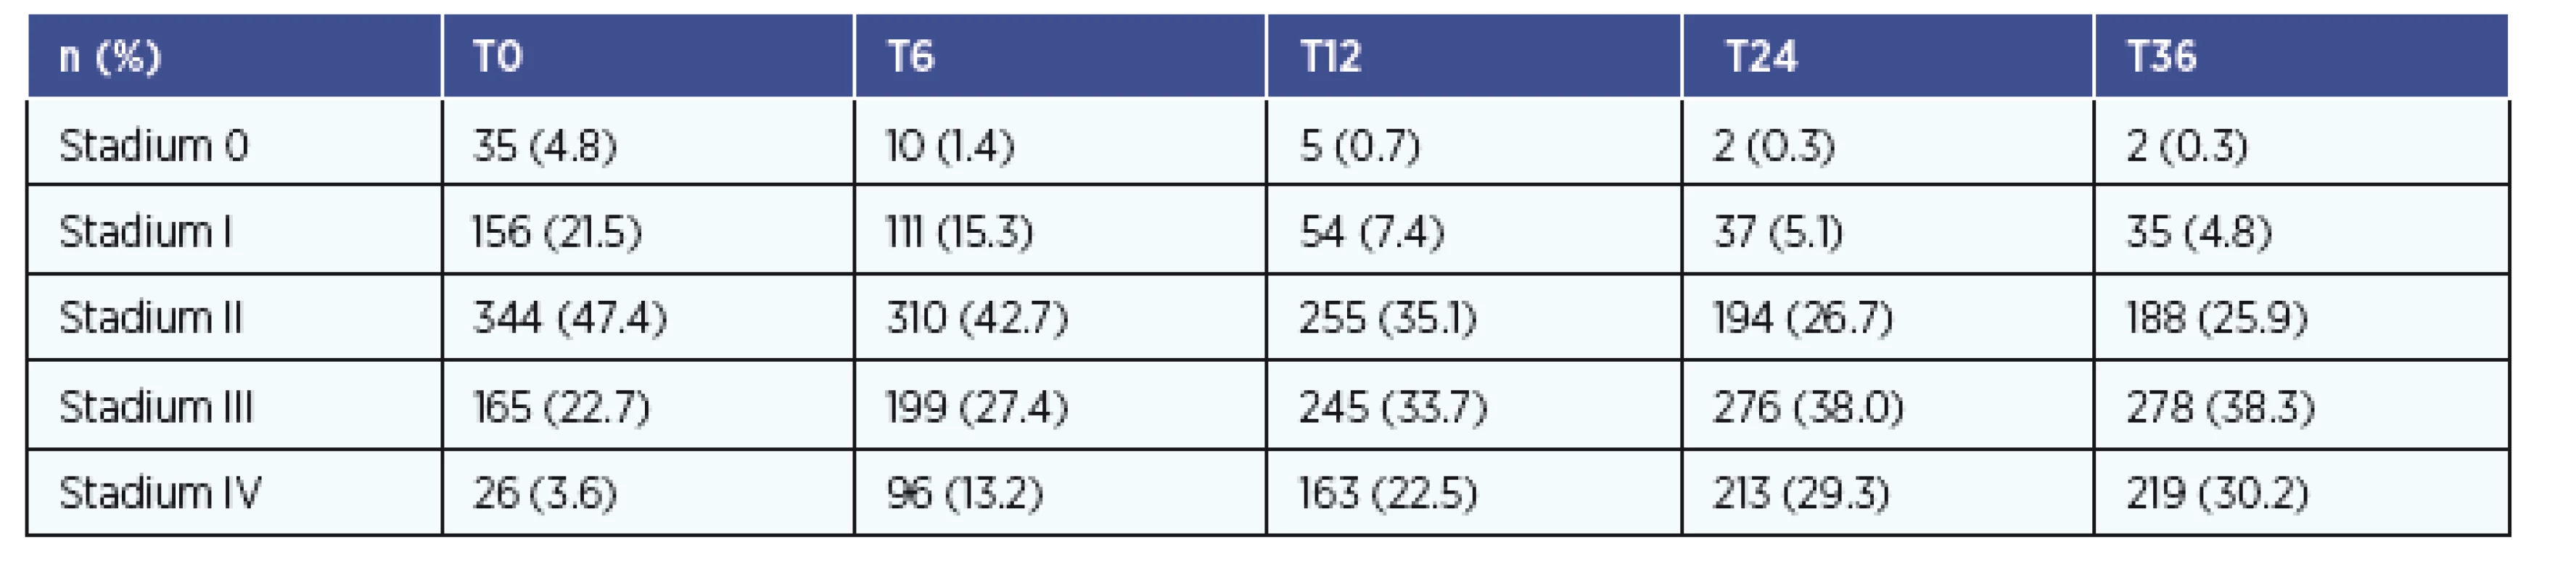 Přehled zastoupení stadií v čase T0-T36.